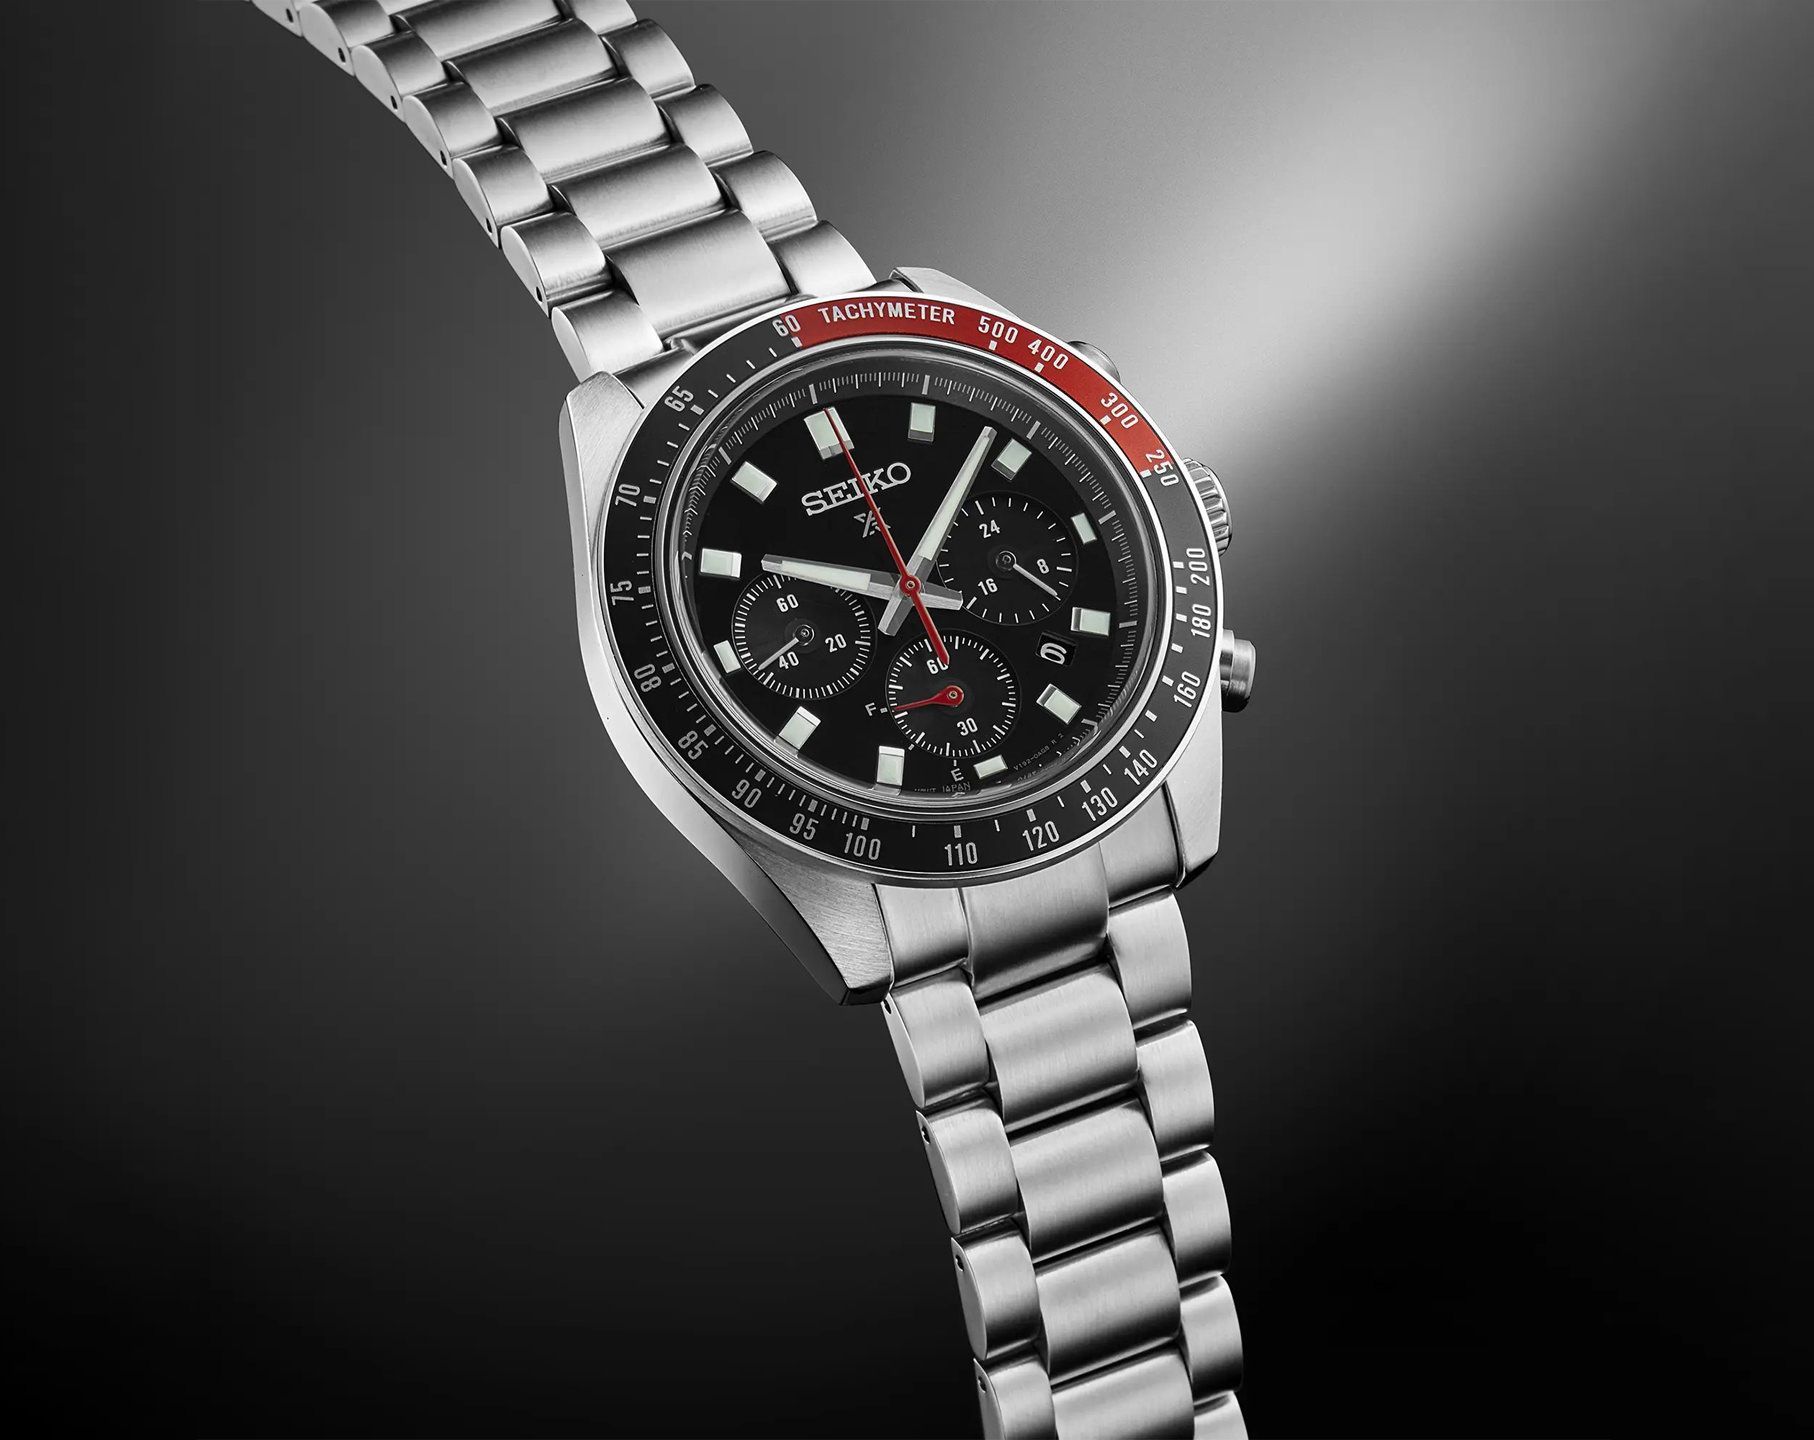 Seiko Speedtimer 41.4 mm Watch in Black Dial